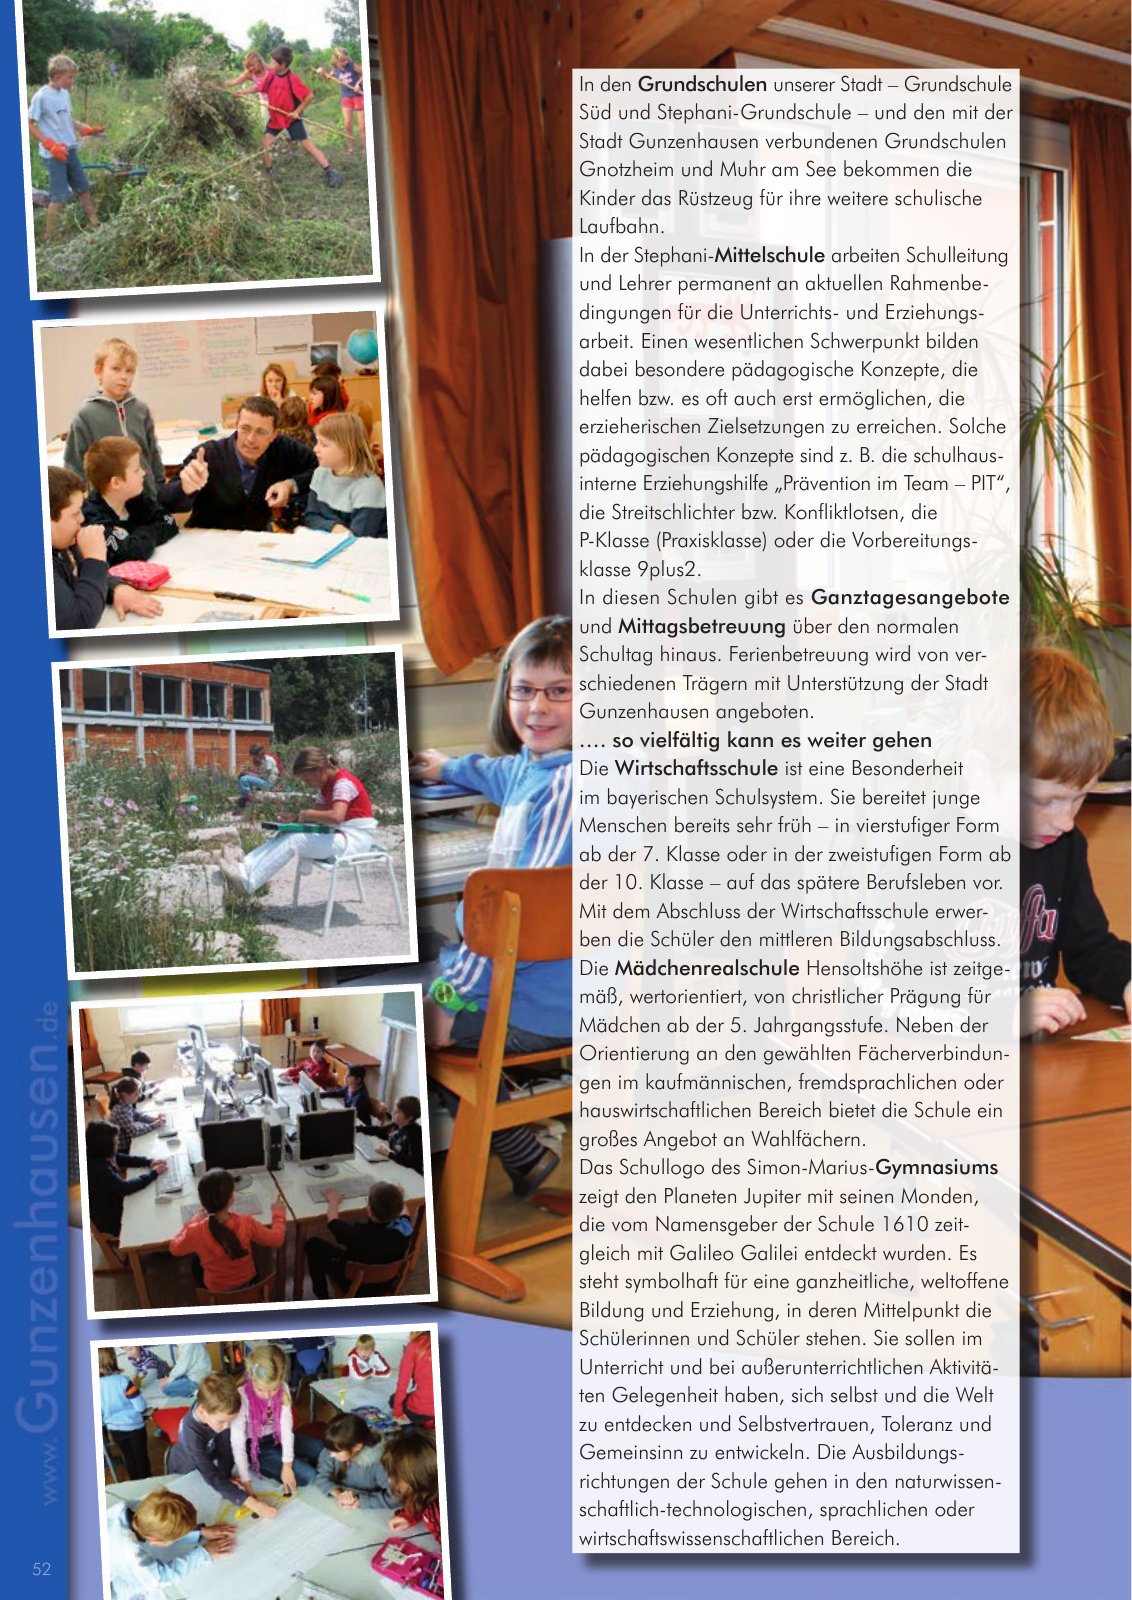 Vorschau leben & arbeiten in Gunzenhausen - 2015 Seite 52